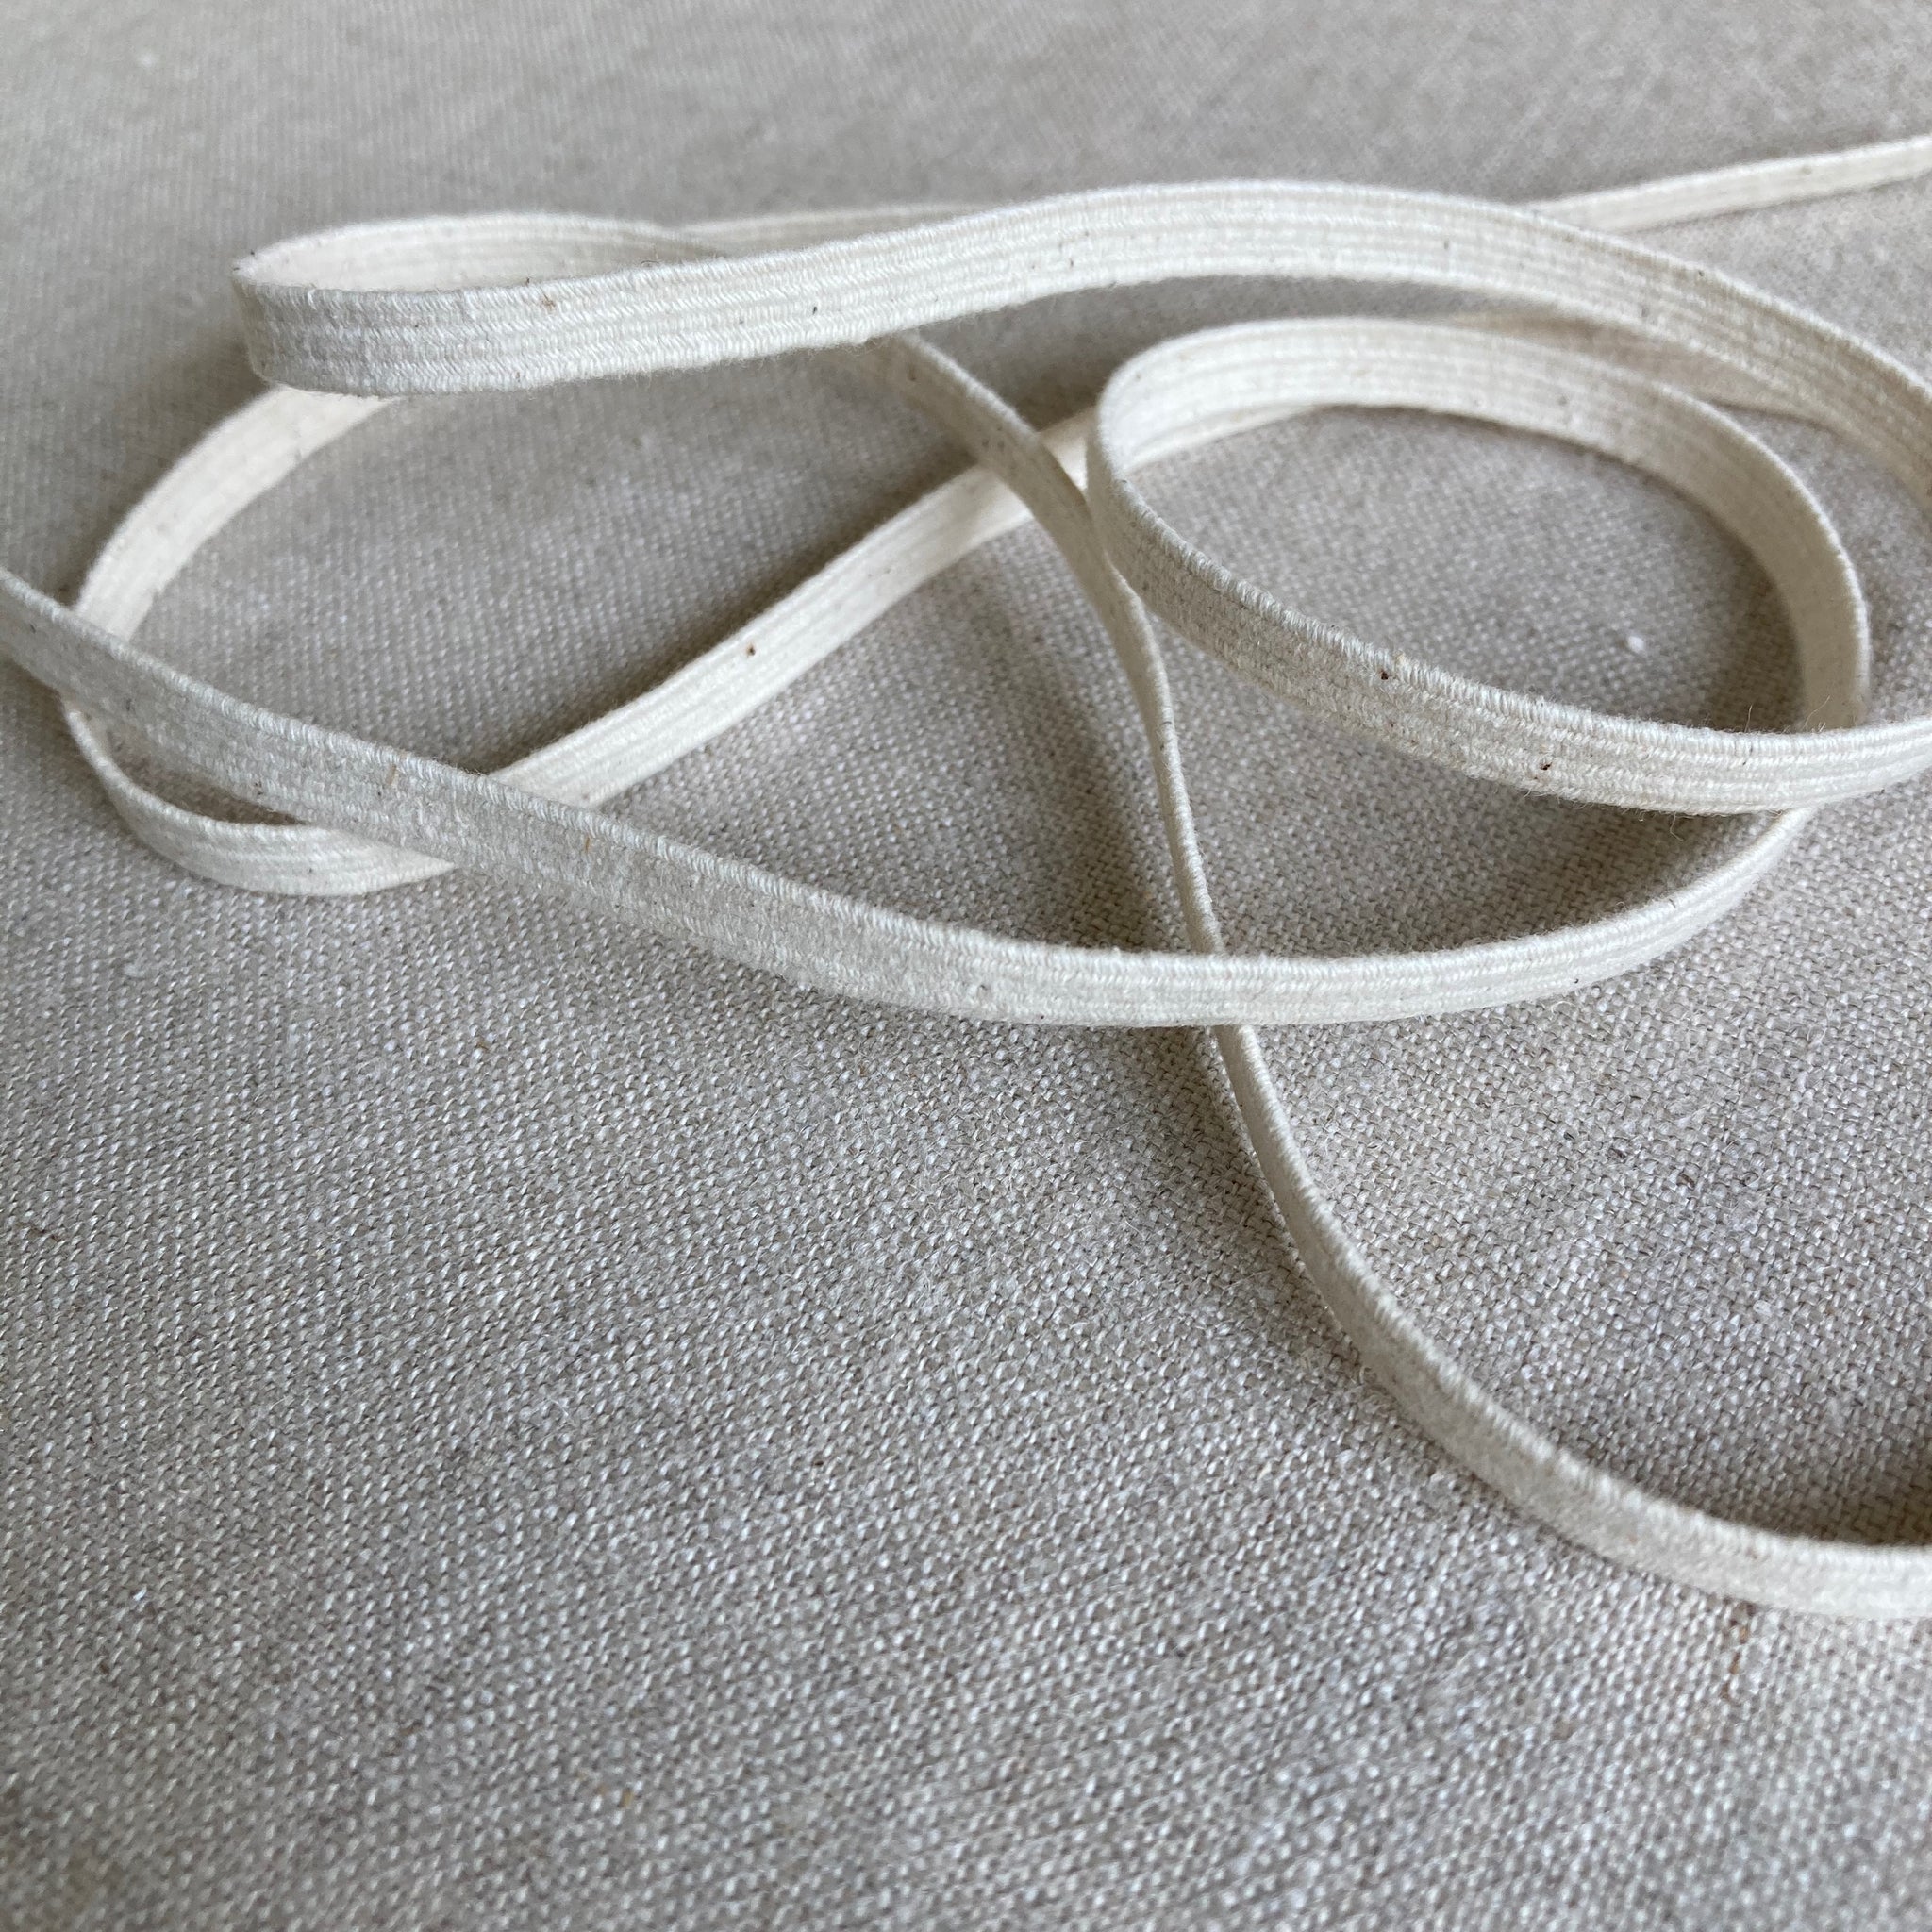 Braided Elastic 1/2 Wide - 1 meter – Sewing Kit Supply